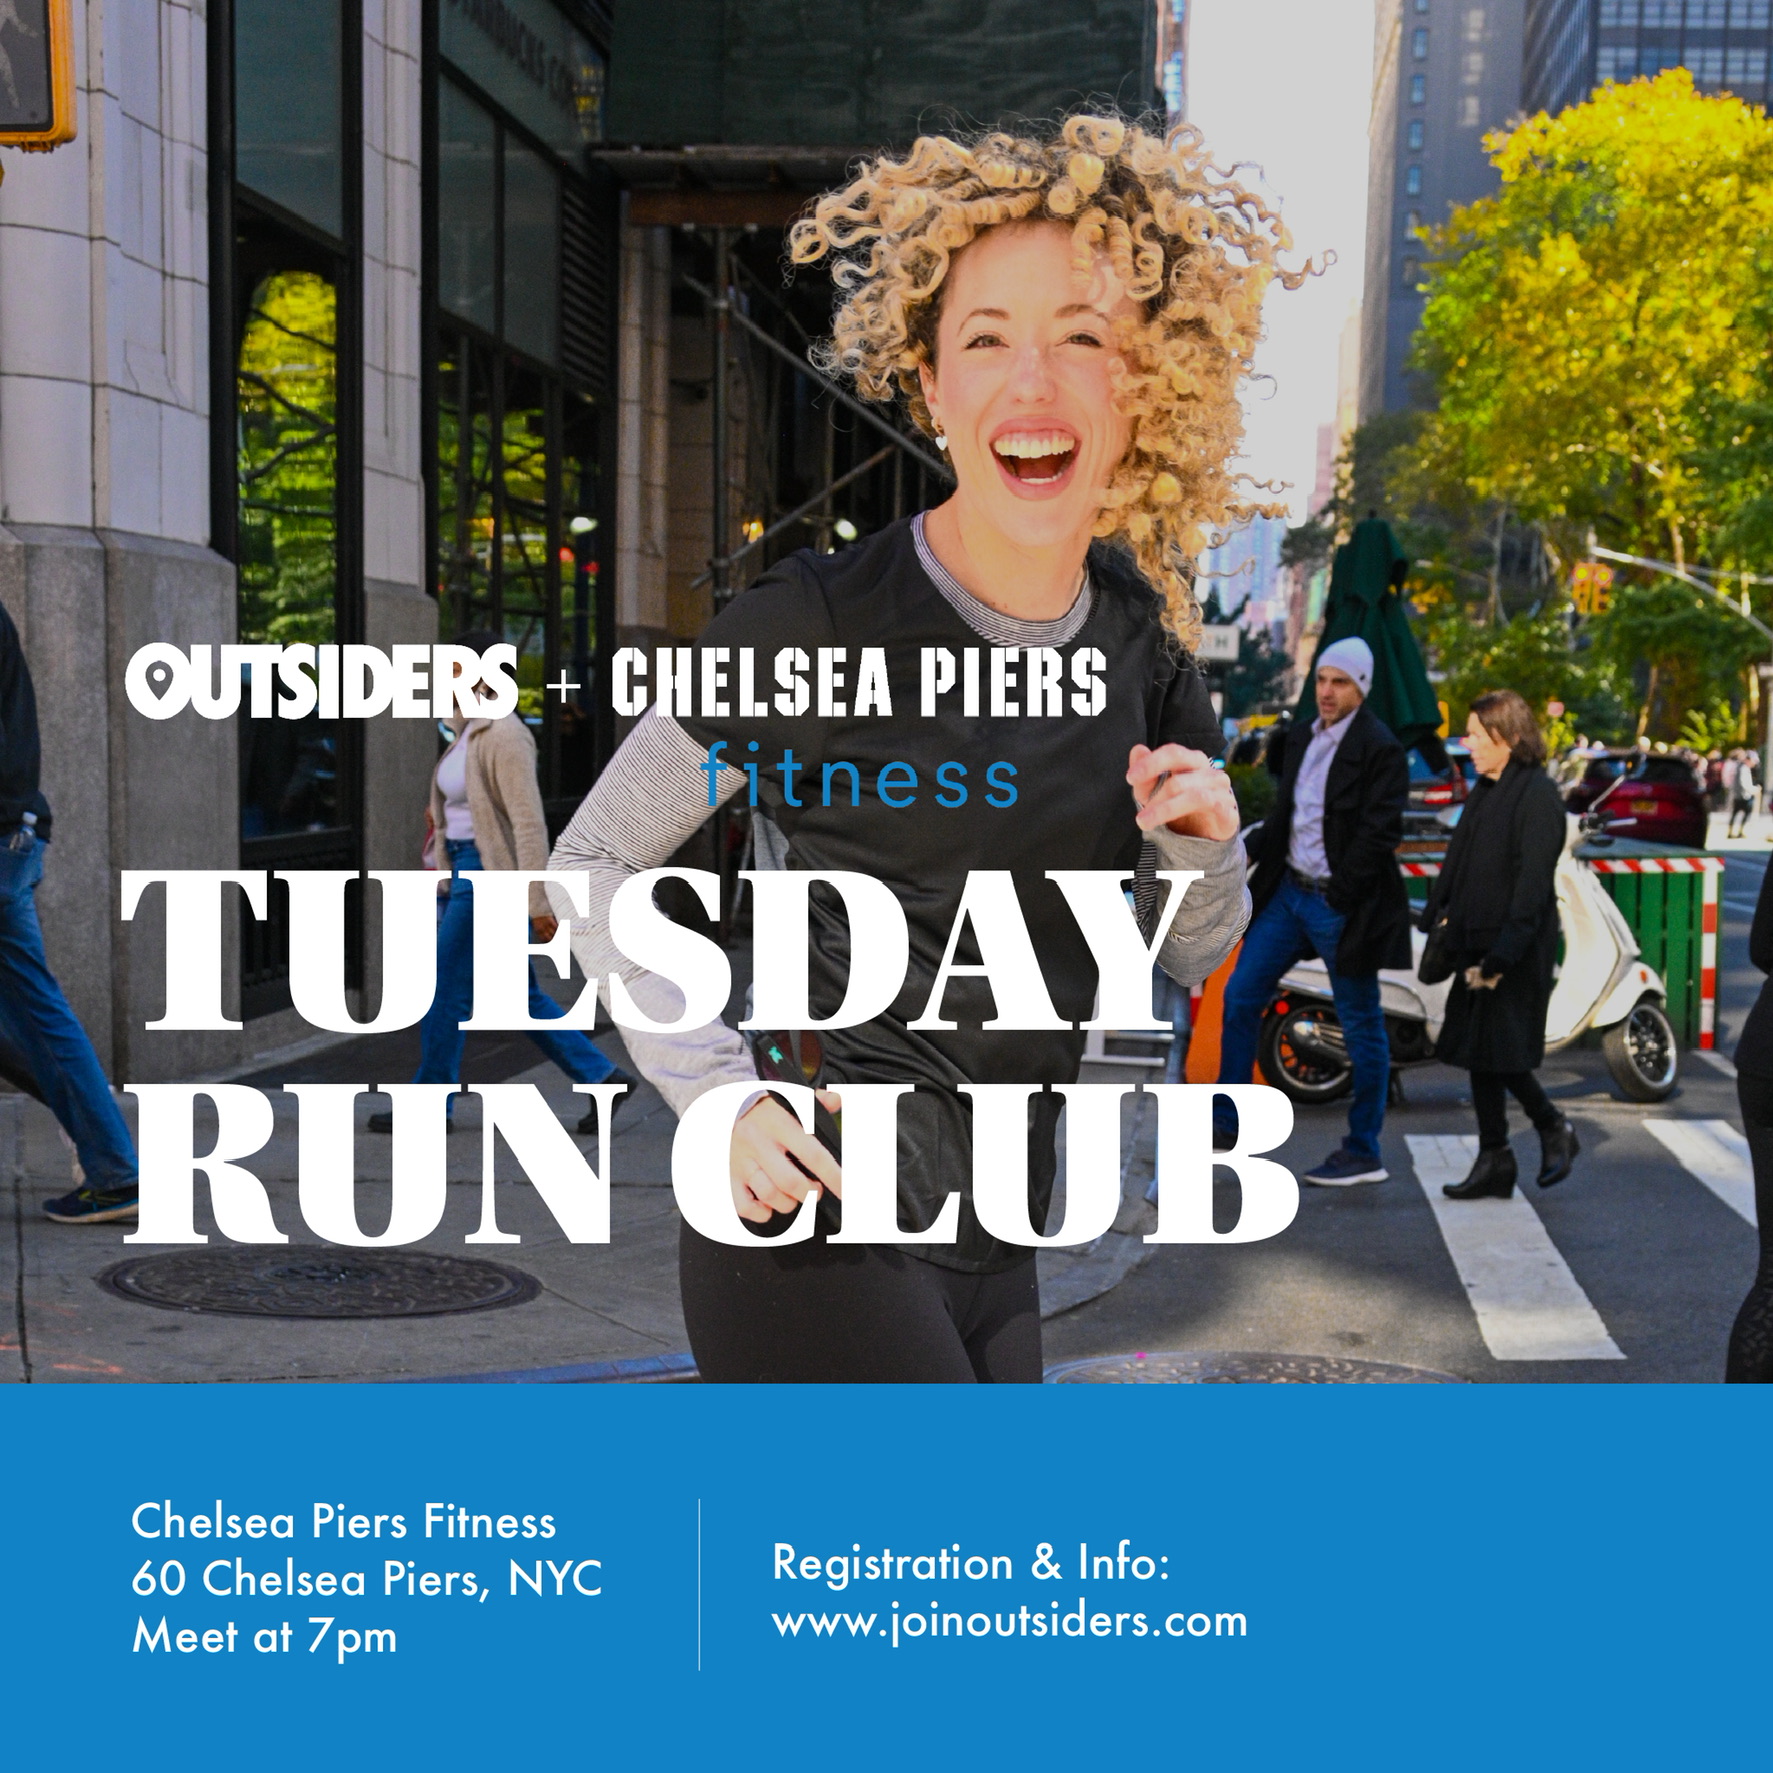 Tuesday Run Club